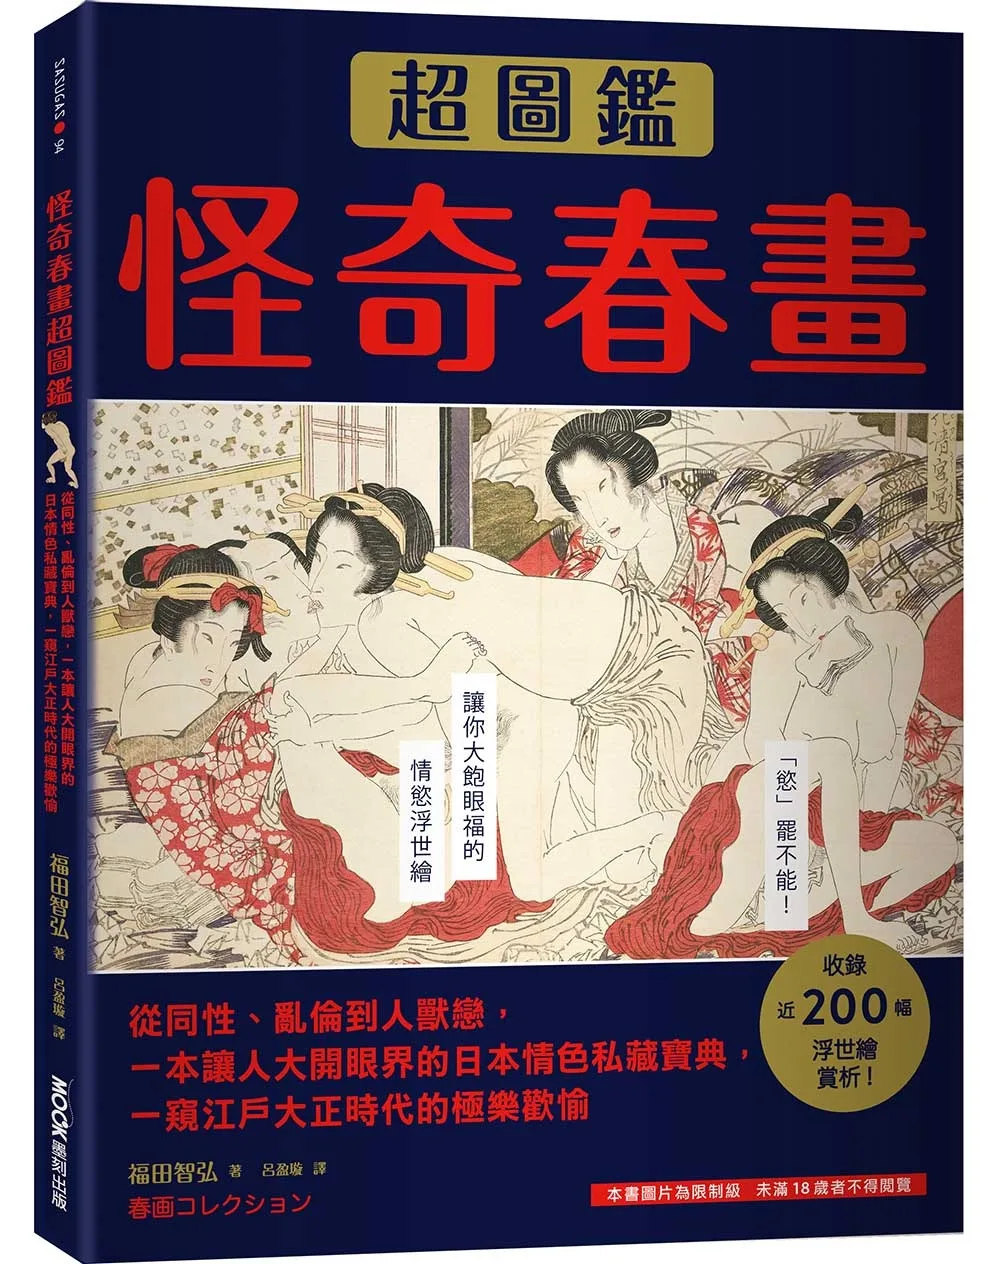 怪奇春畫超圖鑑：從同性、亂倫到人獸戀，一本讓人大開眼界的日本情色私藏寶典，一窺江戶大正時代的極樂歡愉